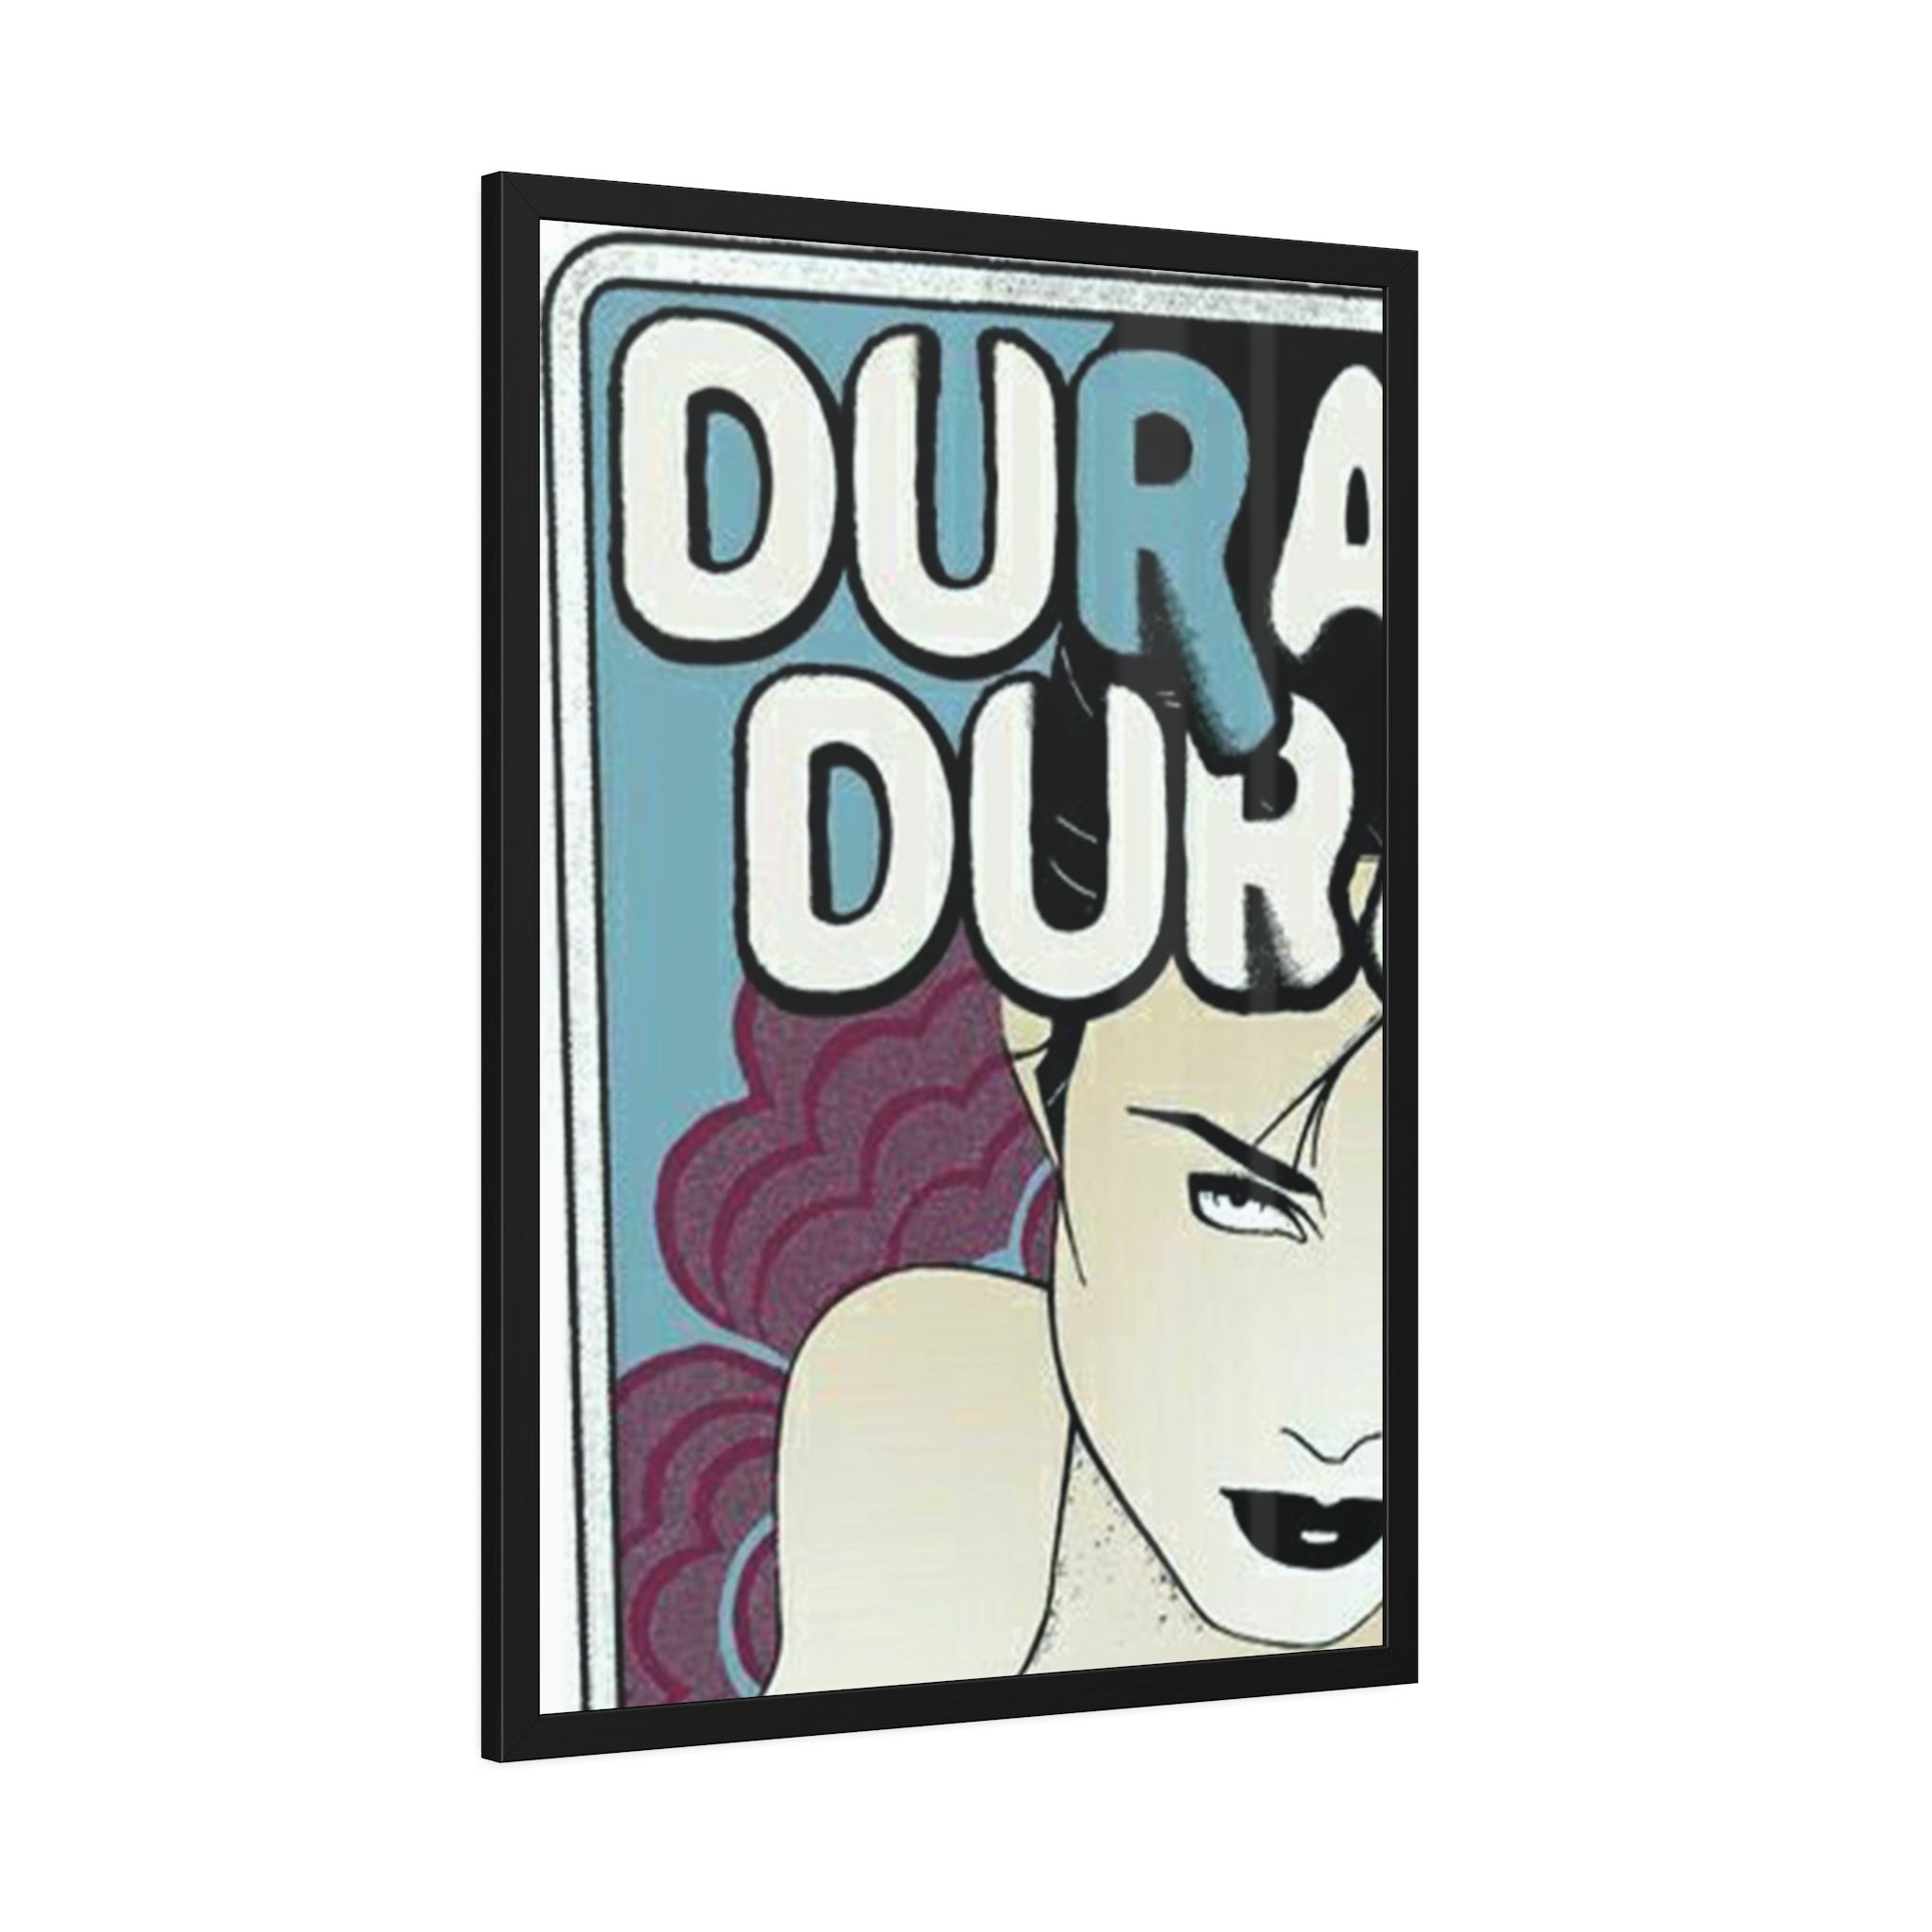 Duran Duran Concert Poster